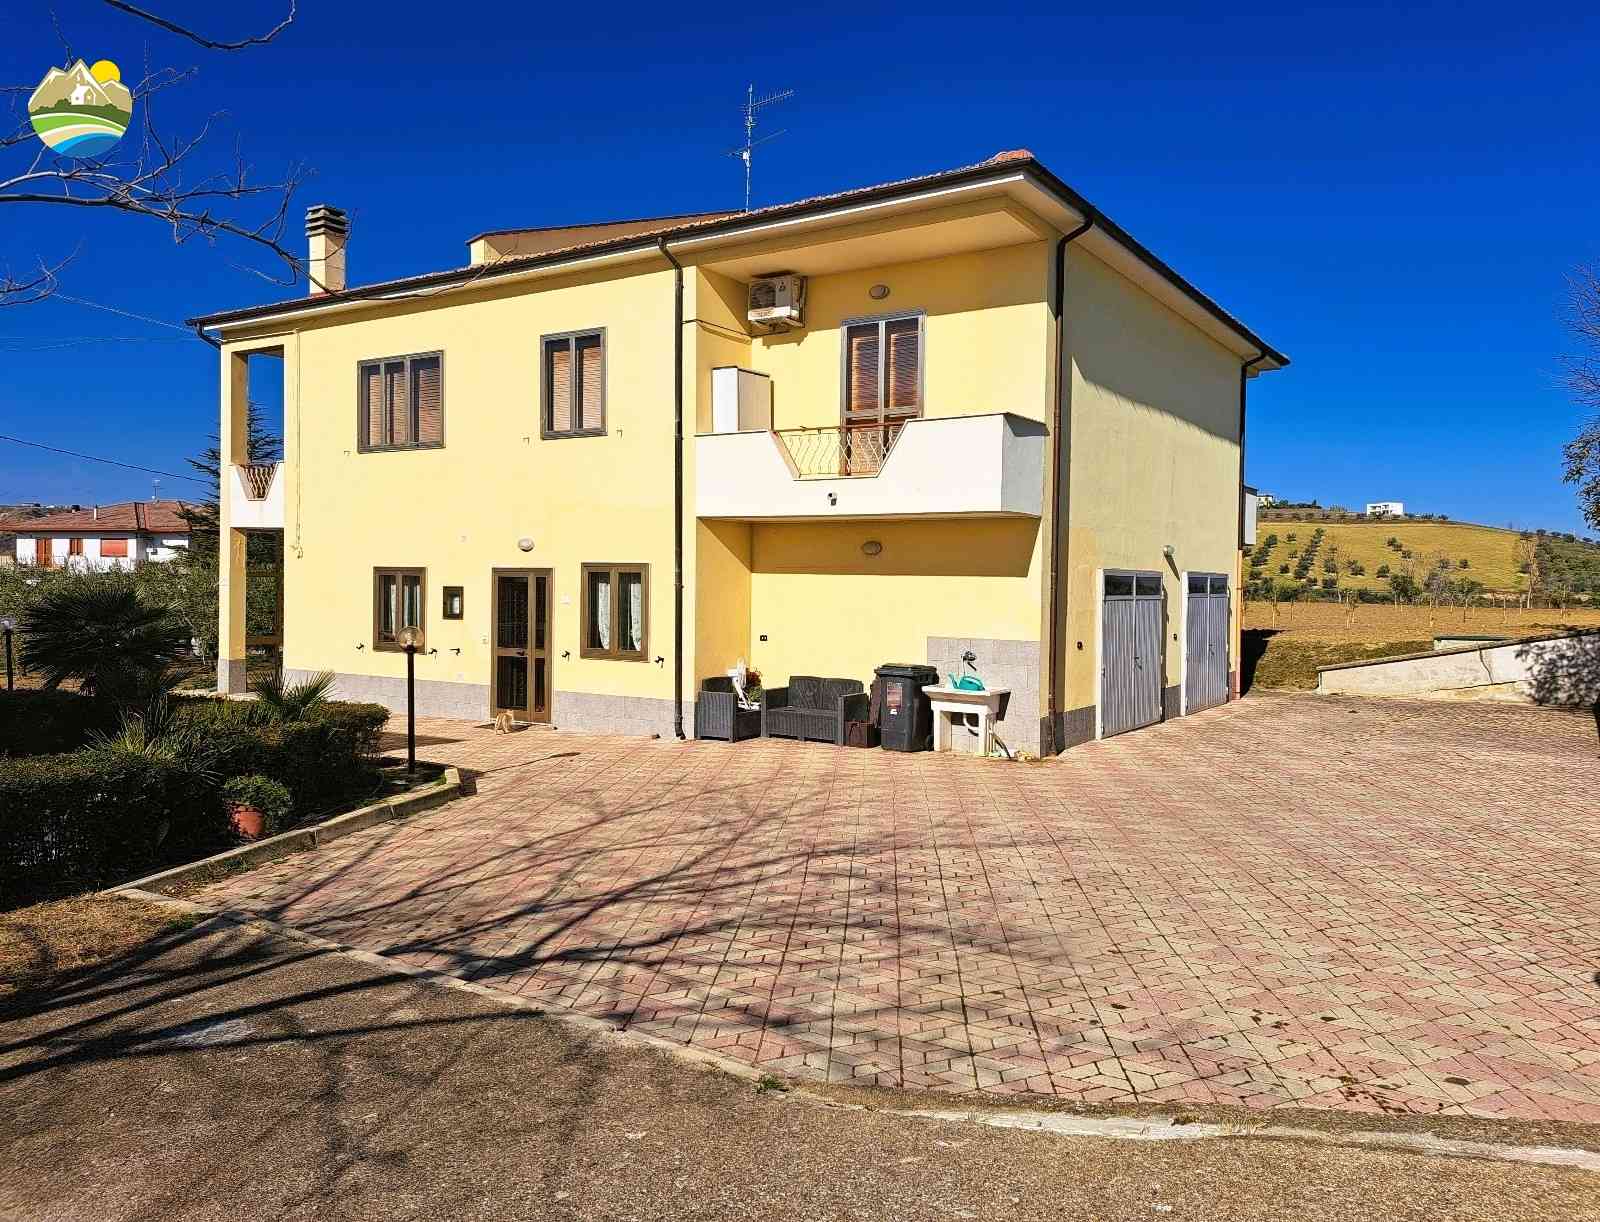 Casa di campagna Casa di campagna in vendita Montefino (TE), Casa Fiorella - Montefino - EUR 197.607 800